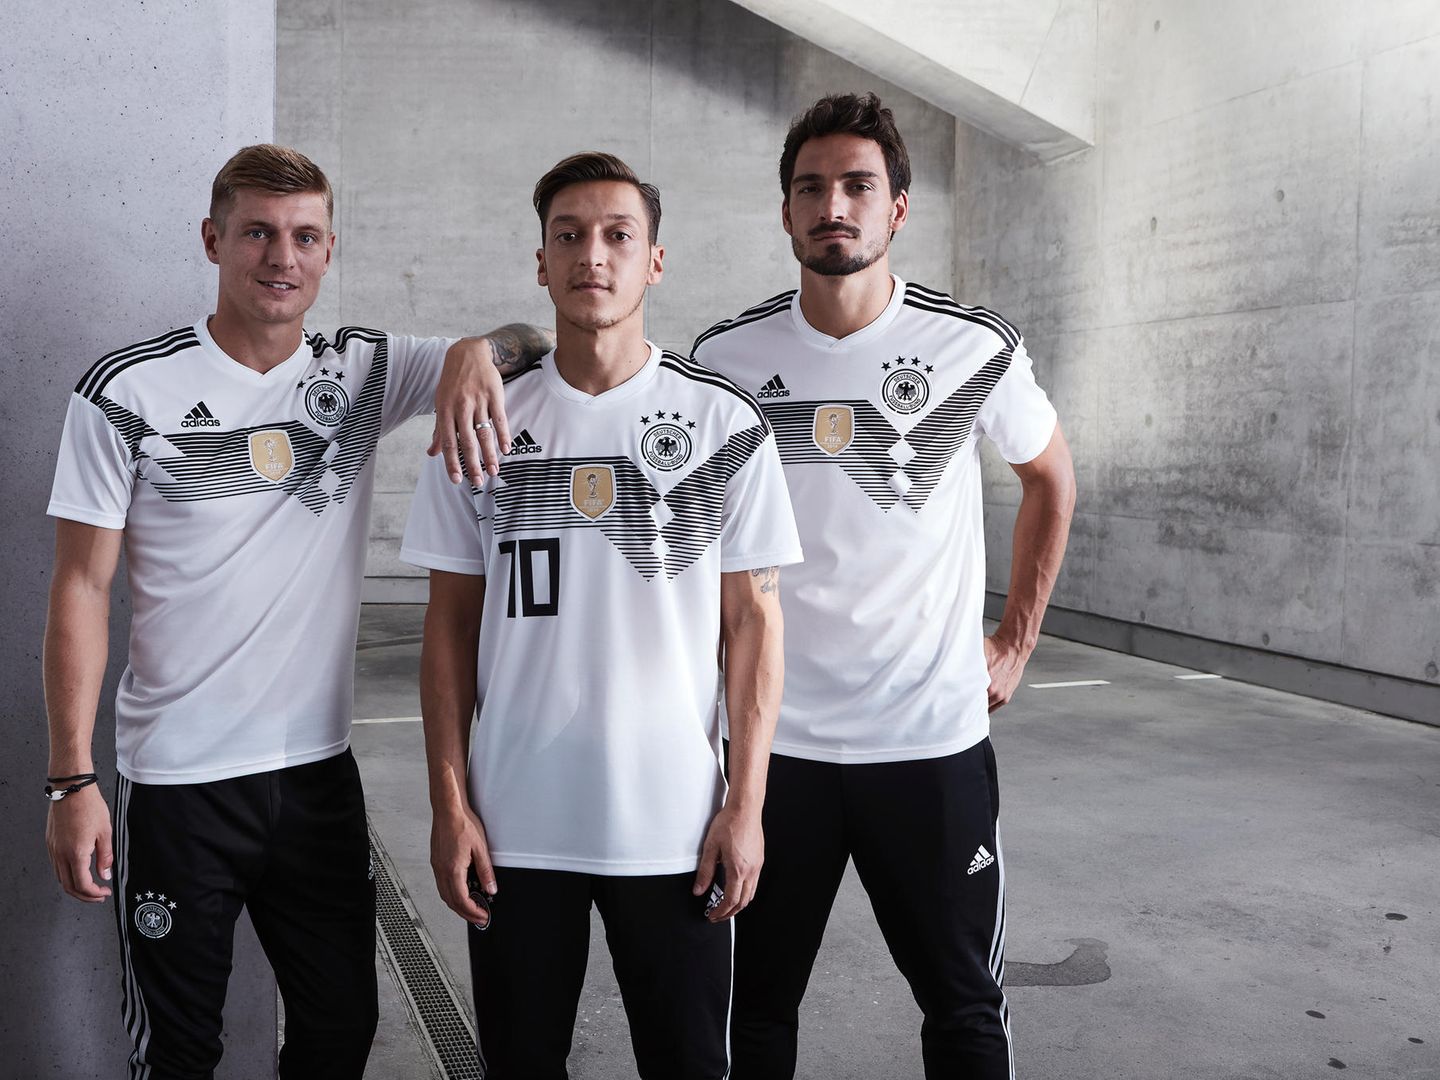 WM Fussball Figuren Deutschland Nationalmannschaft Spieler Trikot Fanartikel Neu 